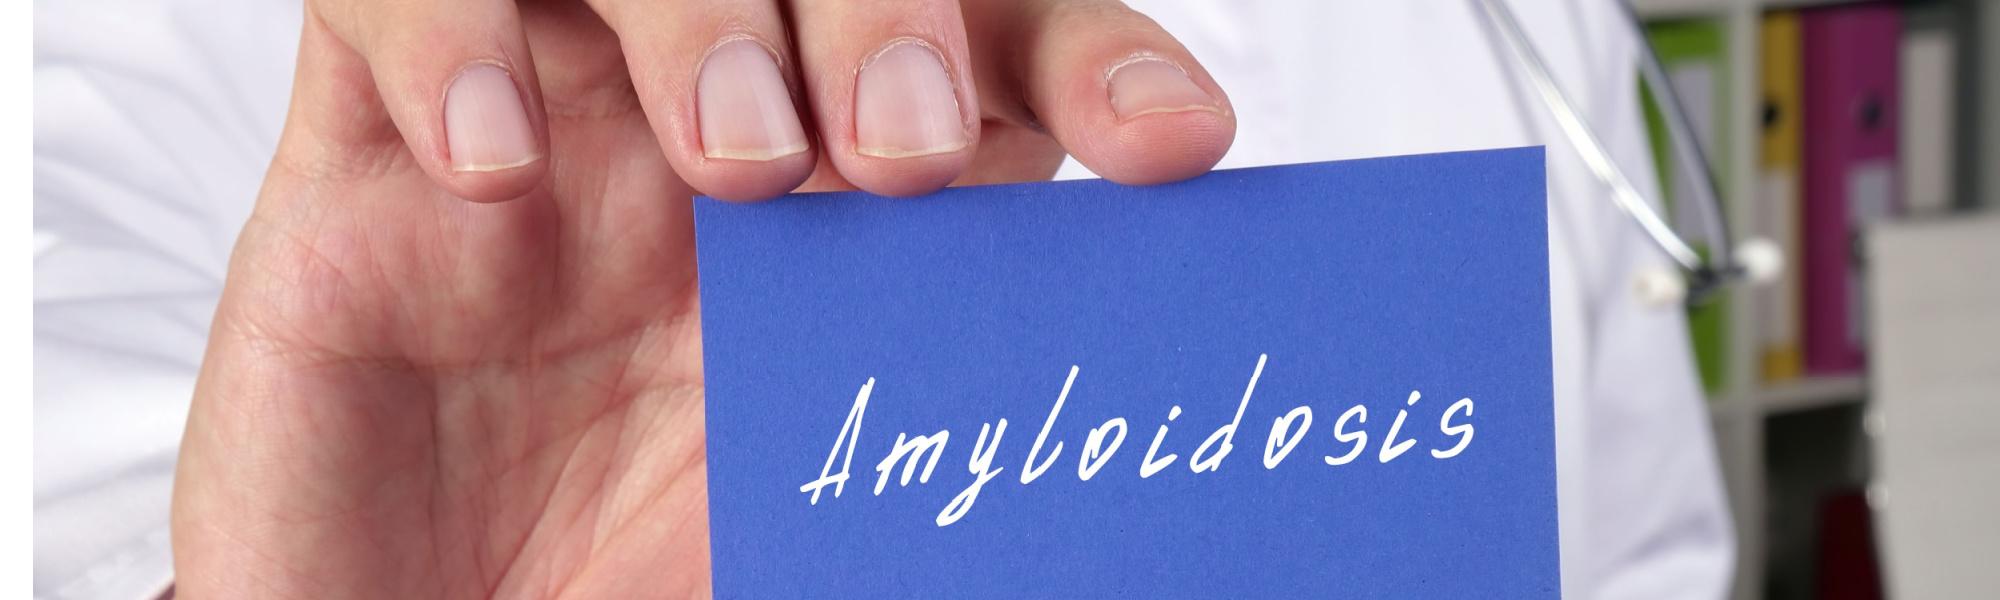 Amyloidoza  – przyczyny i podział, objawy, diagnoza i leczenie